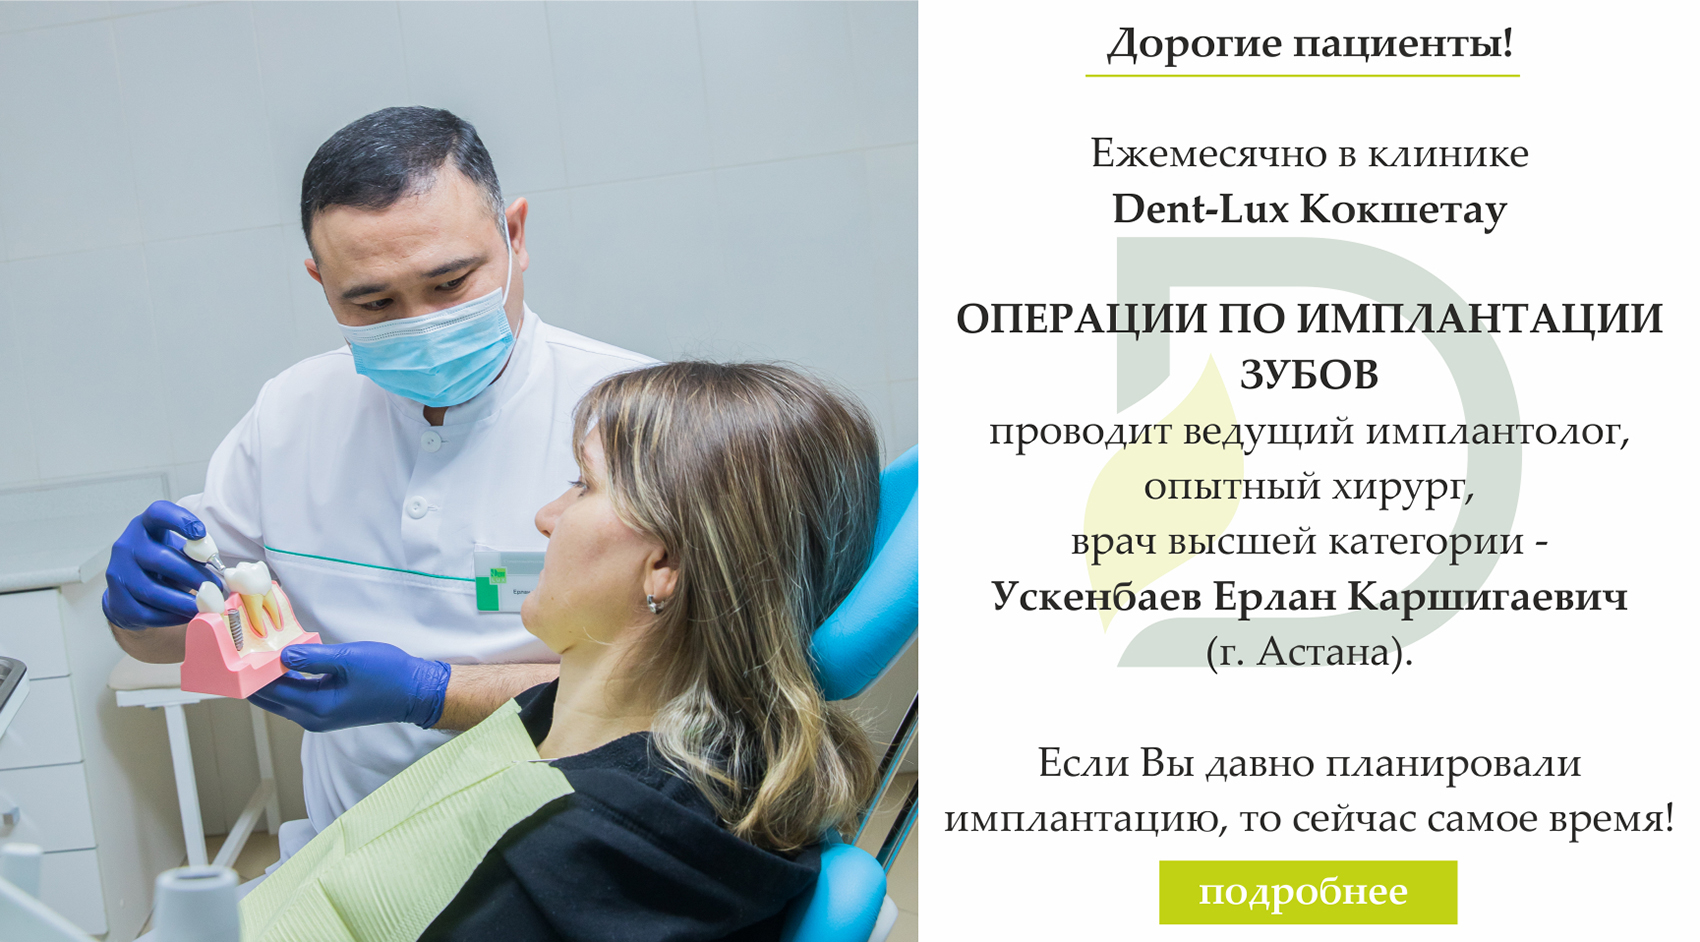 Протезирование зубов в Казахстане, фото 5